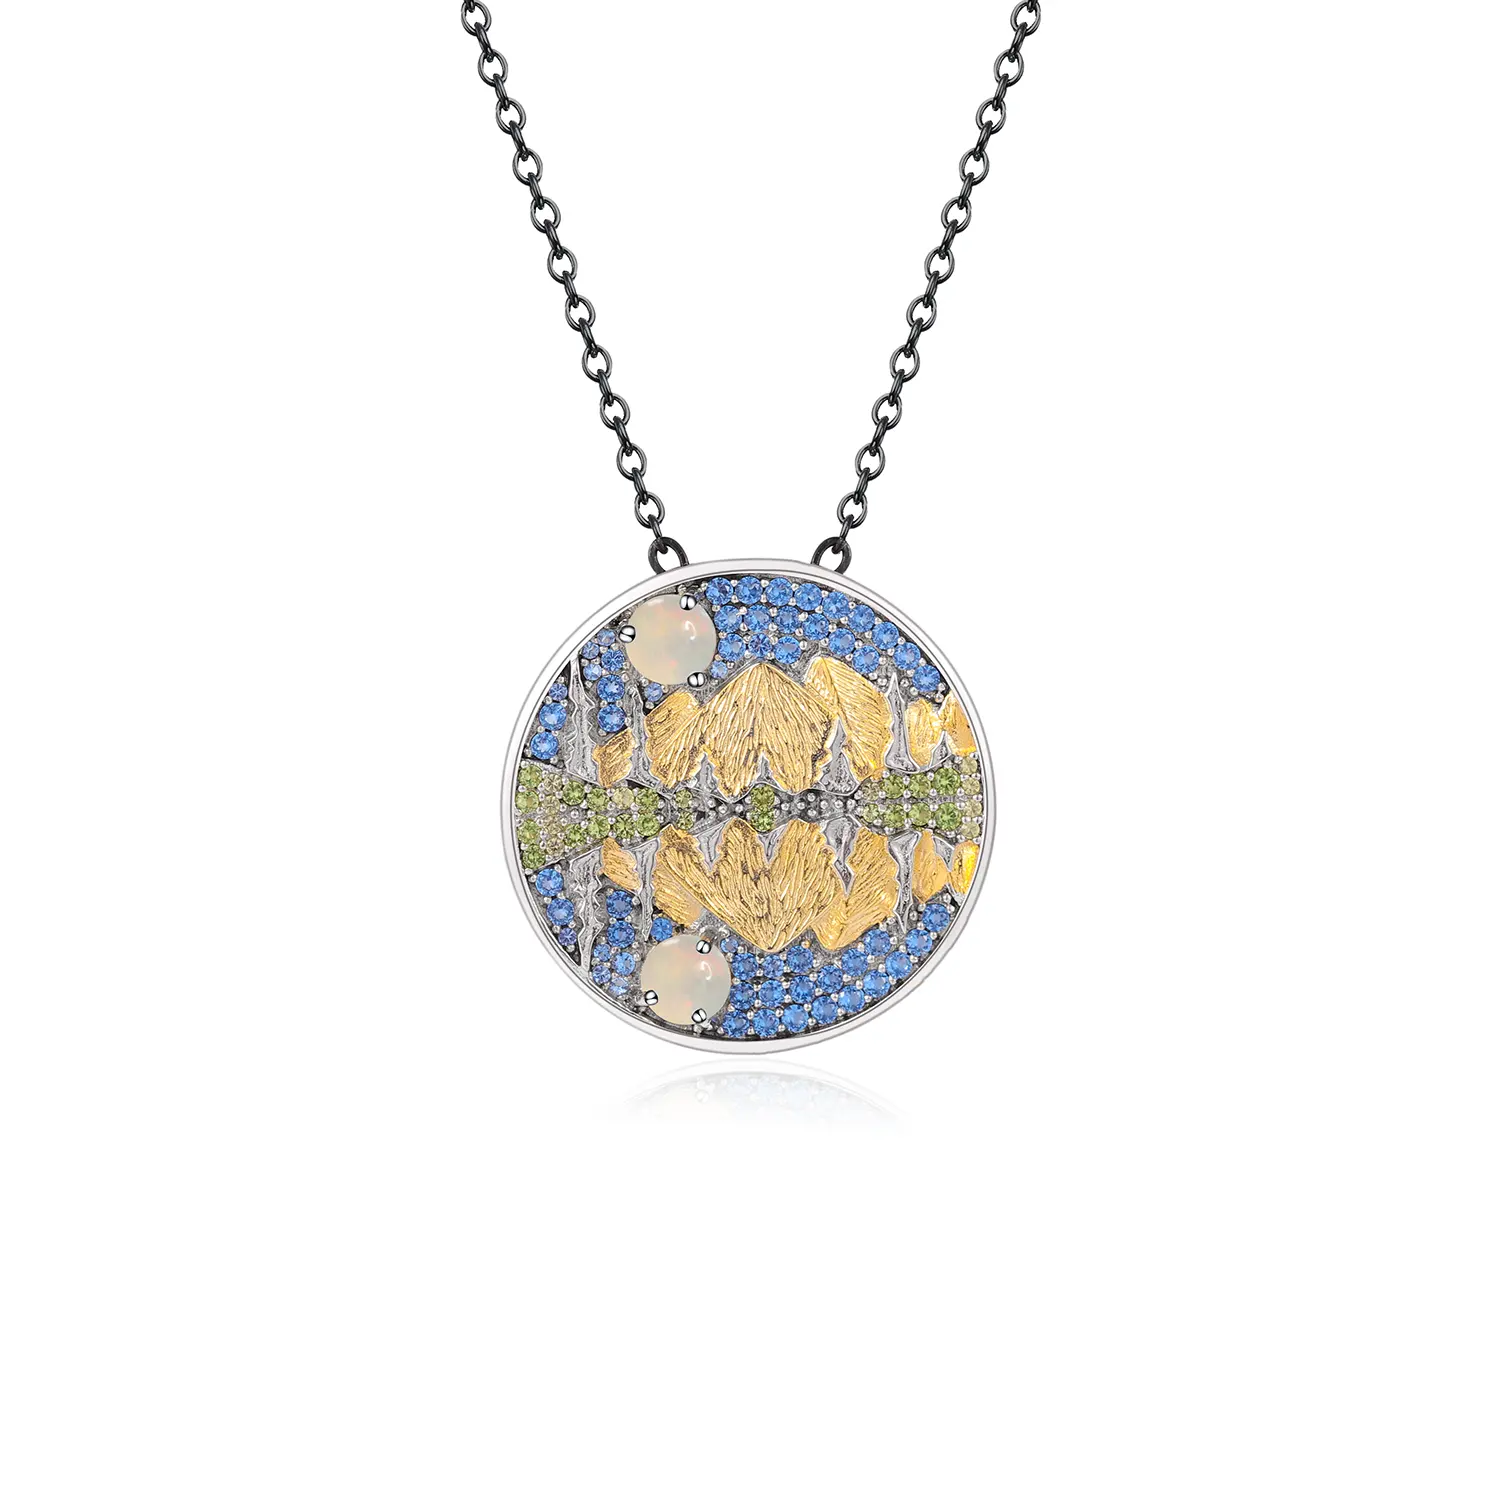 C8195 Bleibender feiner Schmuck Fabrik preis Natürliche afrikanische Opal landschafts reflexion 925 Sterling Silber Anhänger Halskette